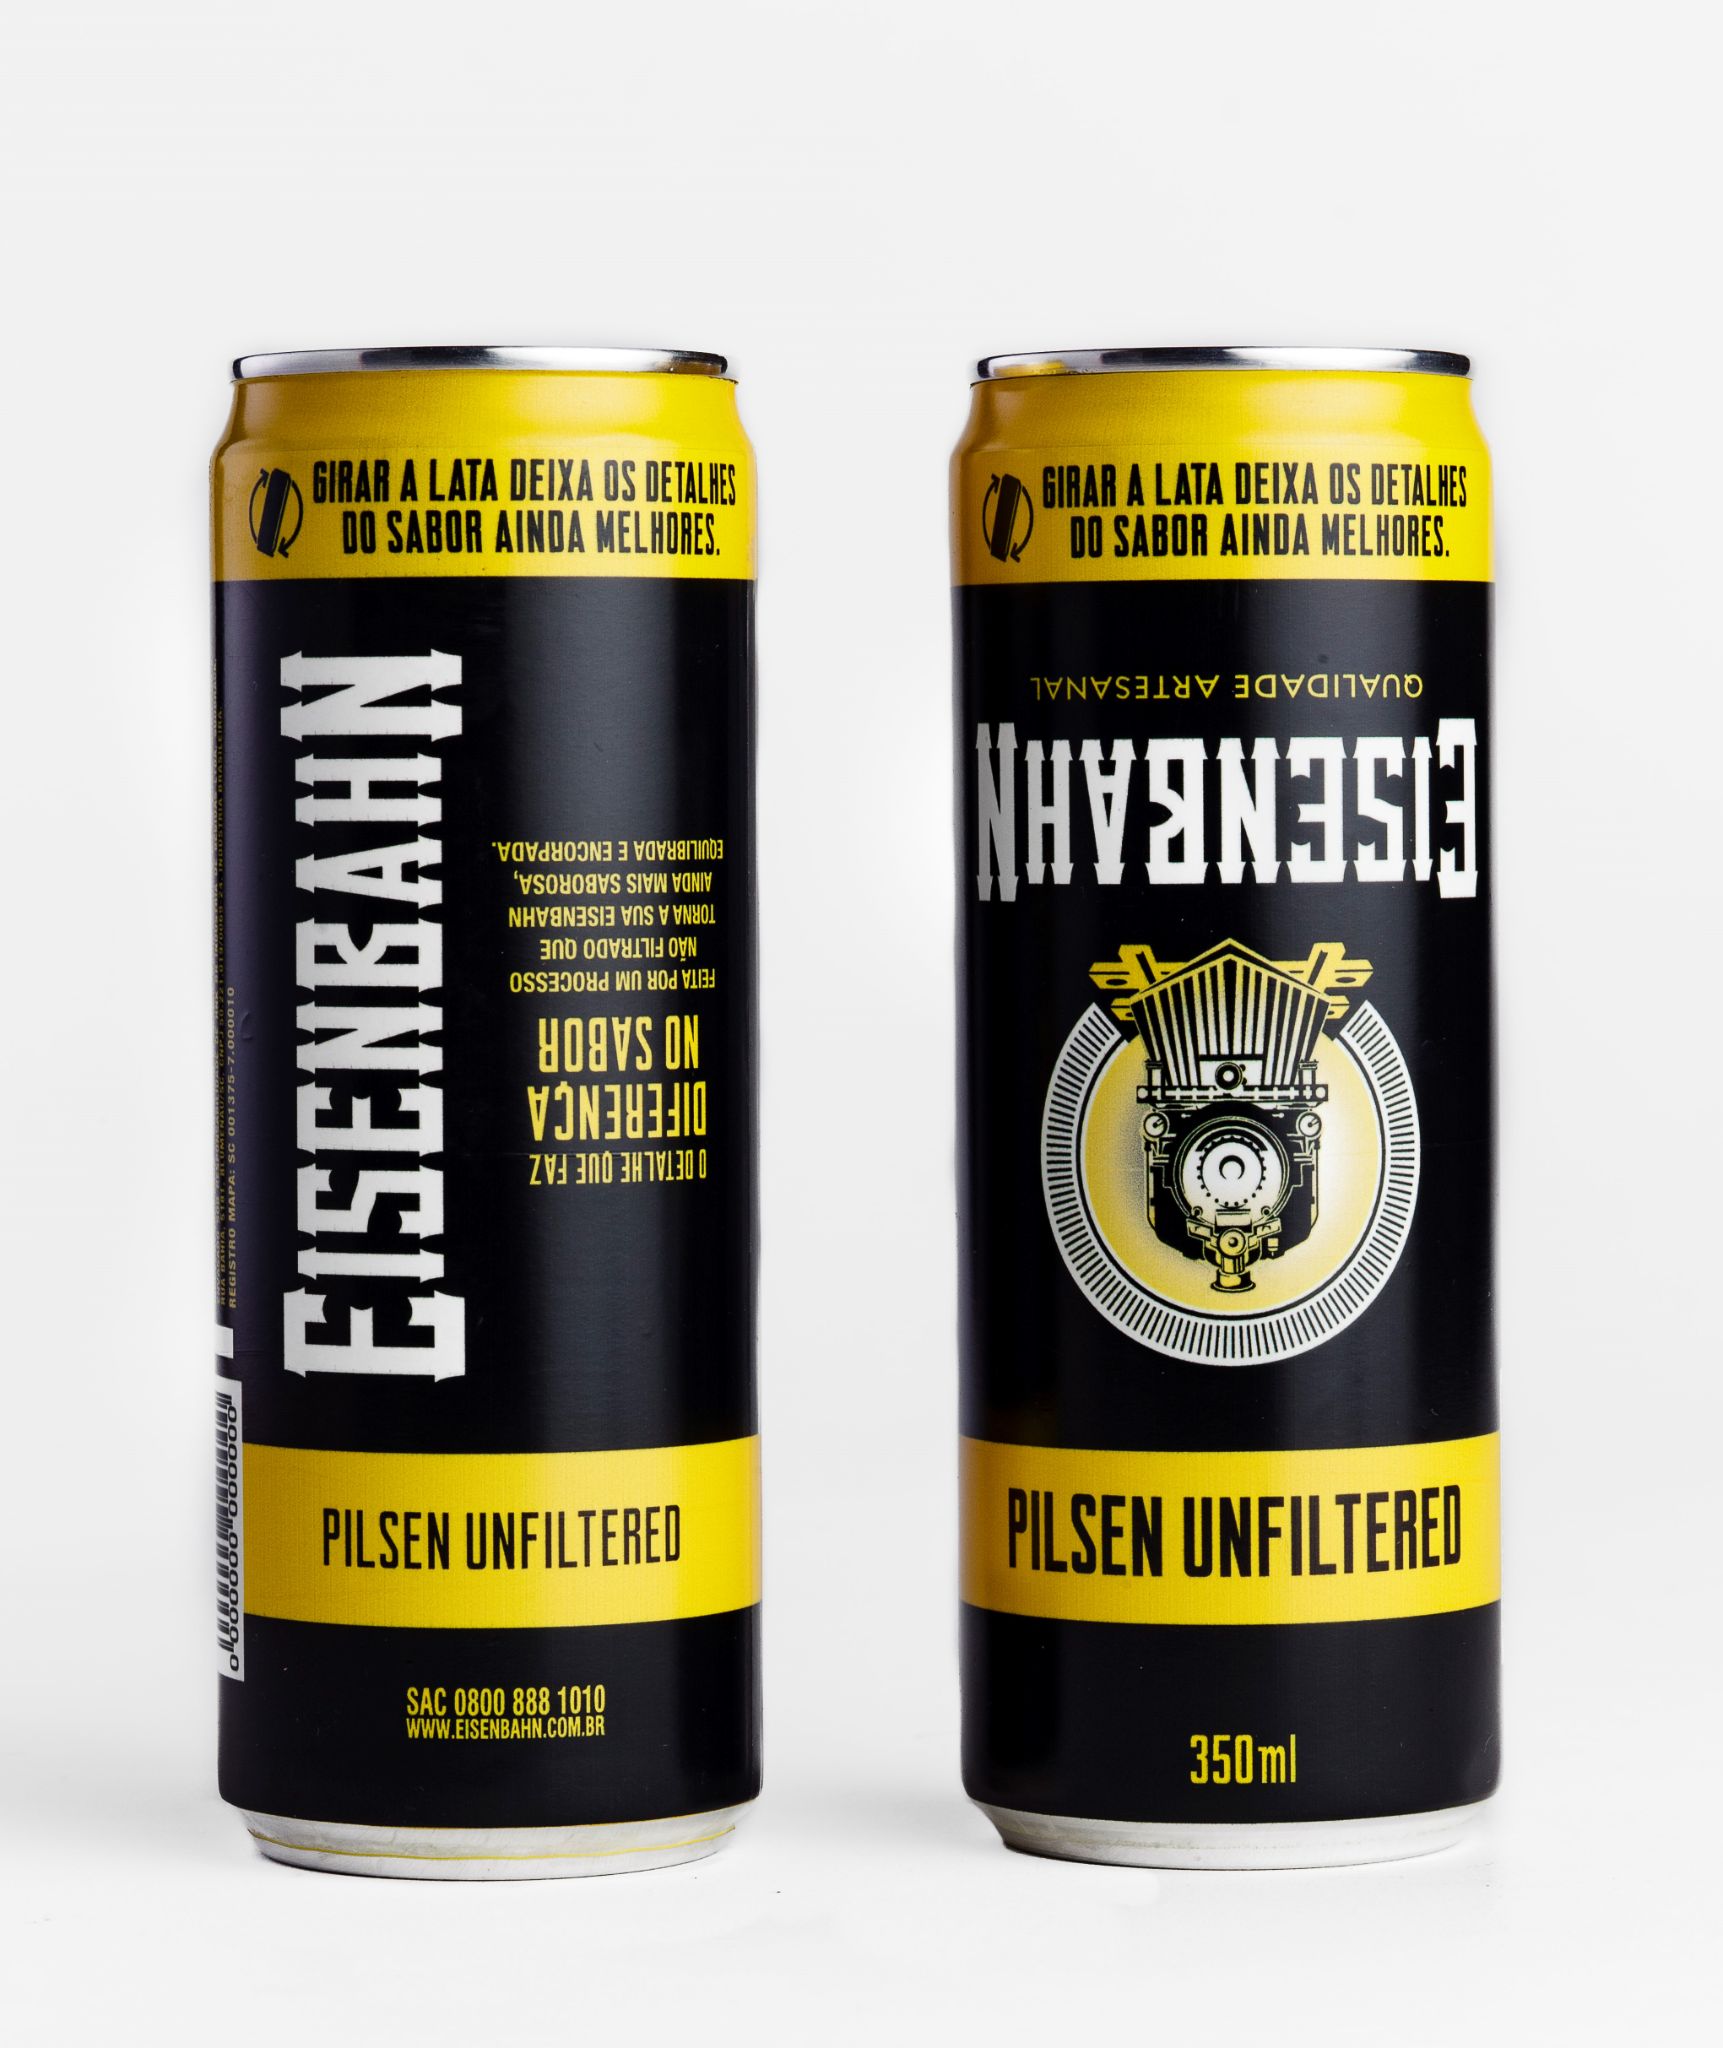 Com as artes invertidas, Eisenbahn Pilsen Unfiltered ressalta que girar a lata deixa os detalhes do sabor ainda melhores antes de beber a cerveja